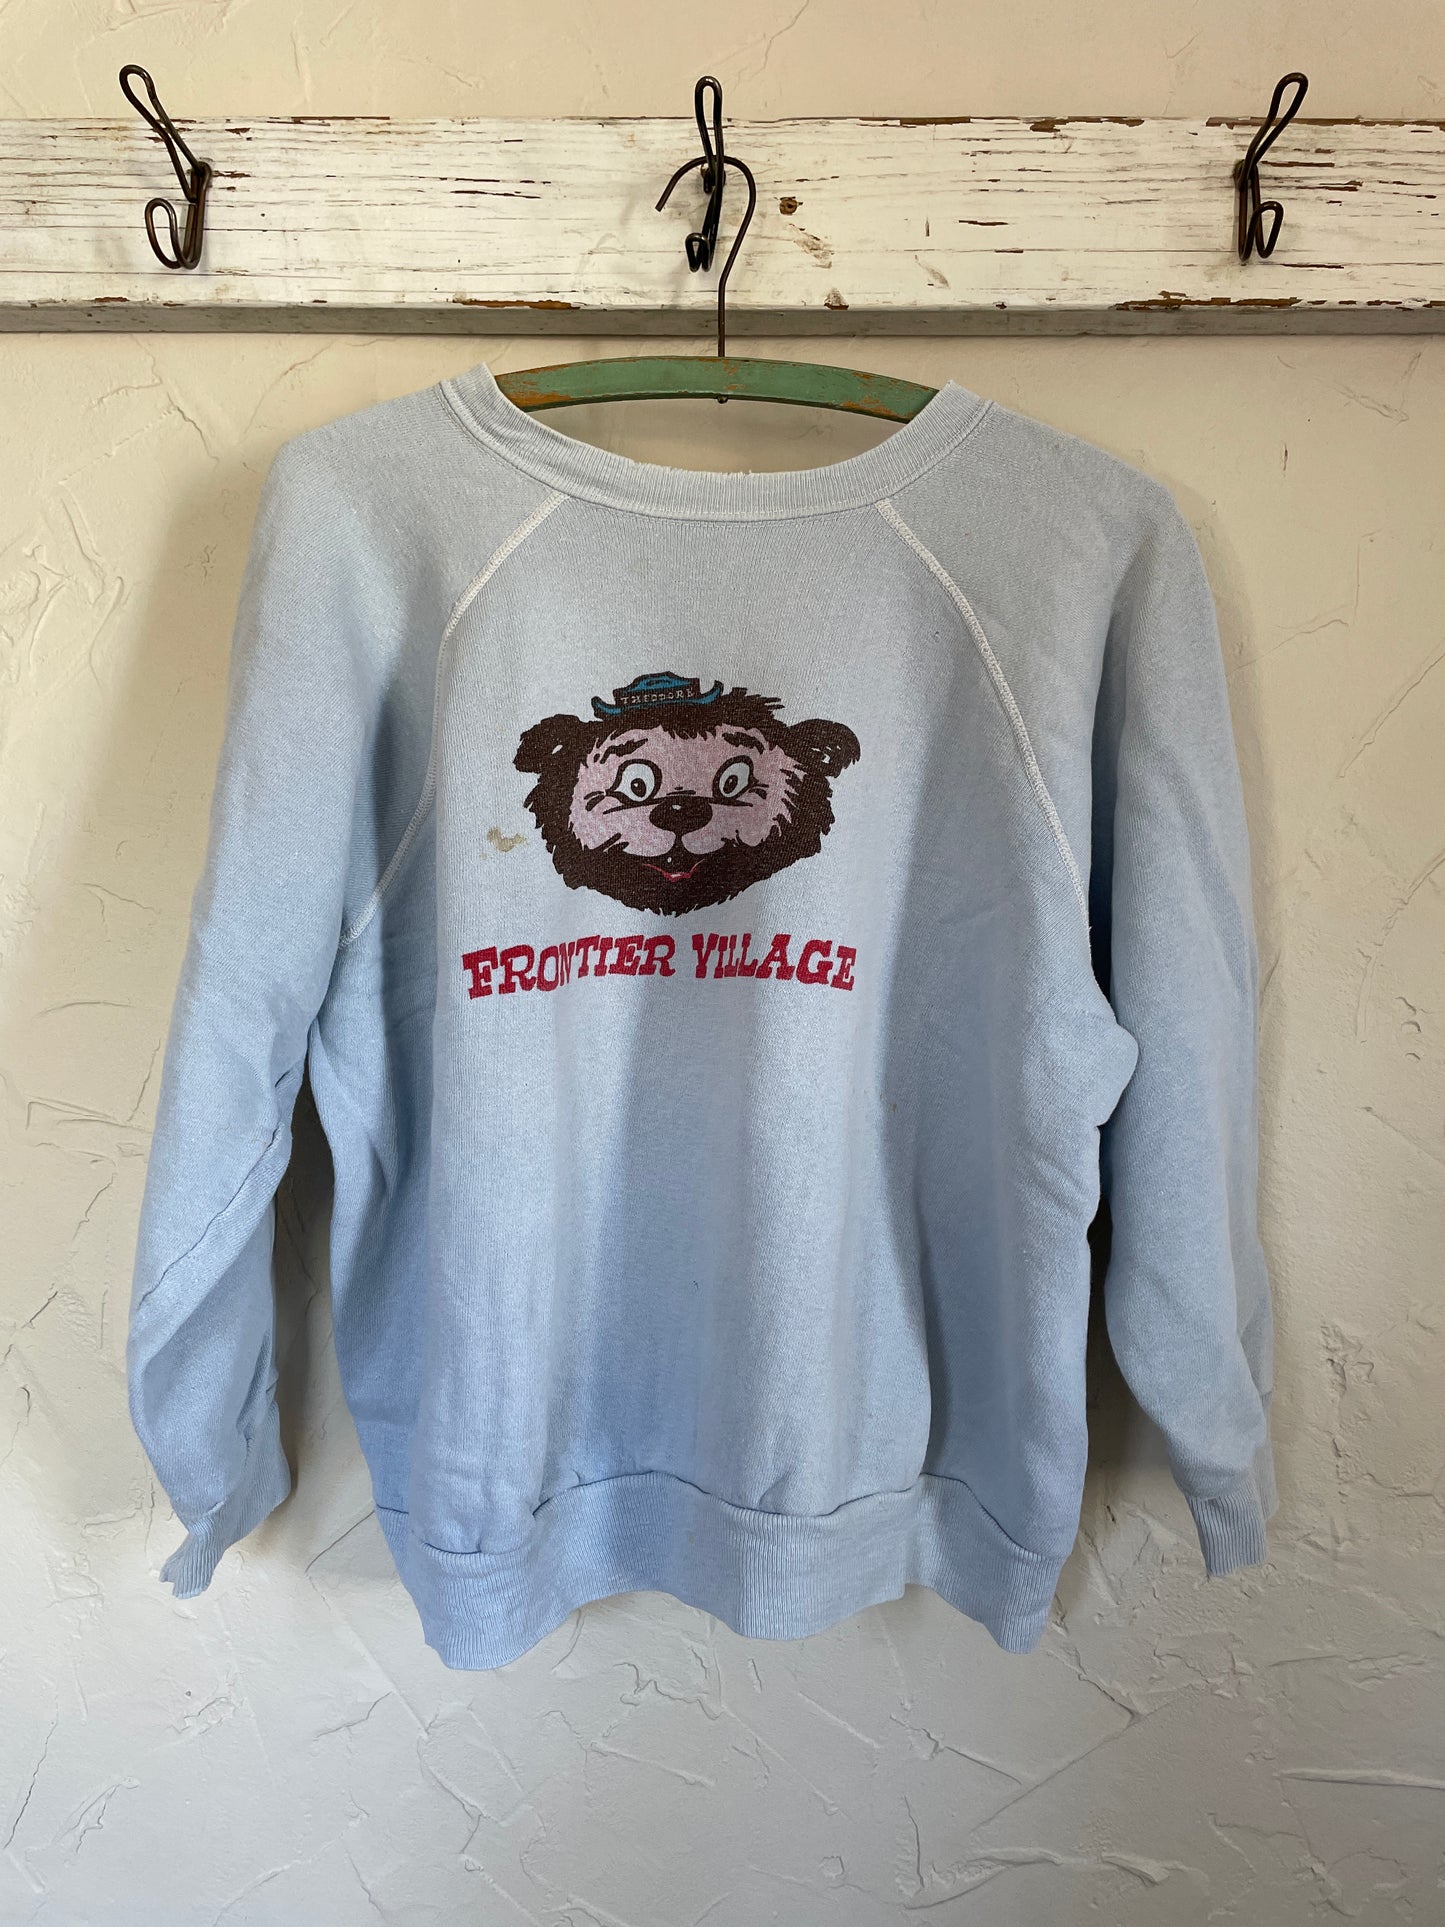 70s Frontier Village Sweatshirt